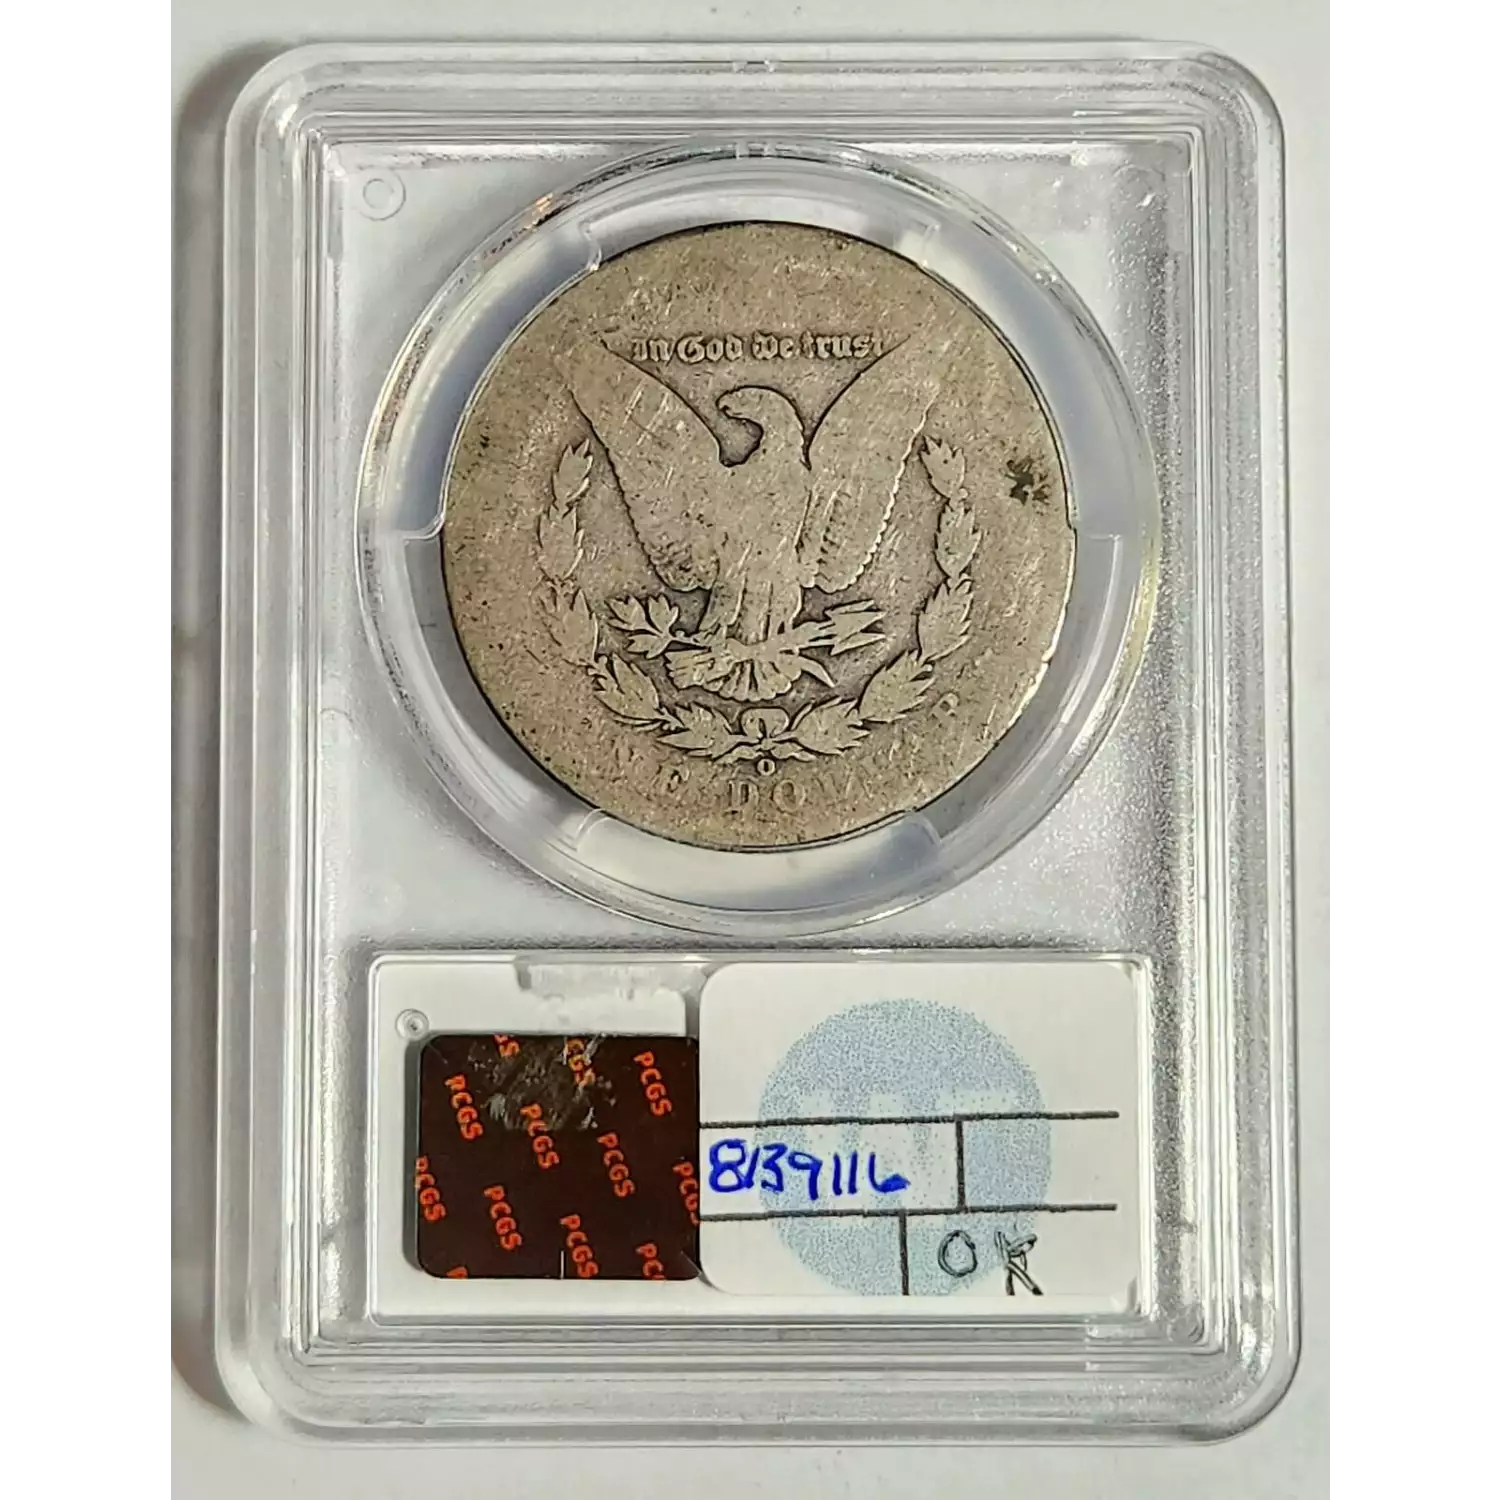 1889-O $1